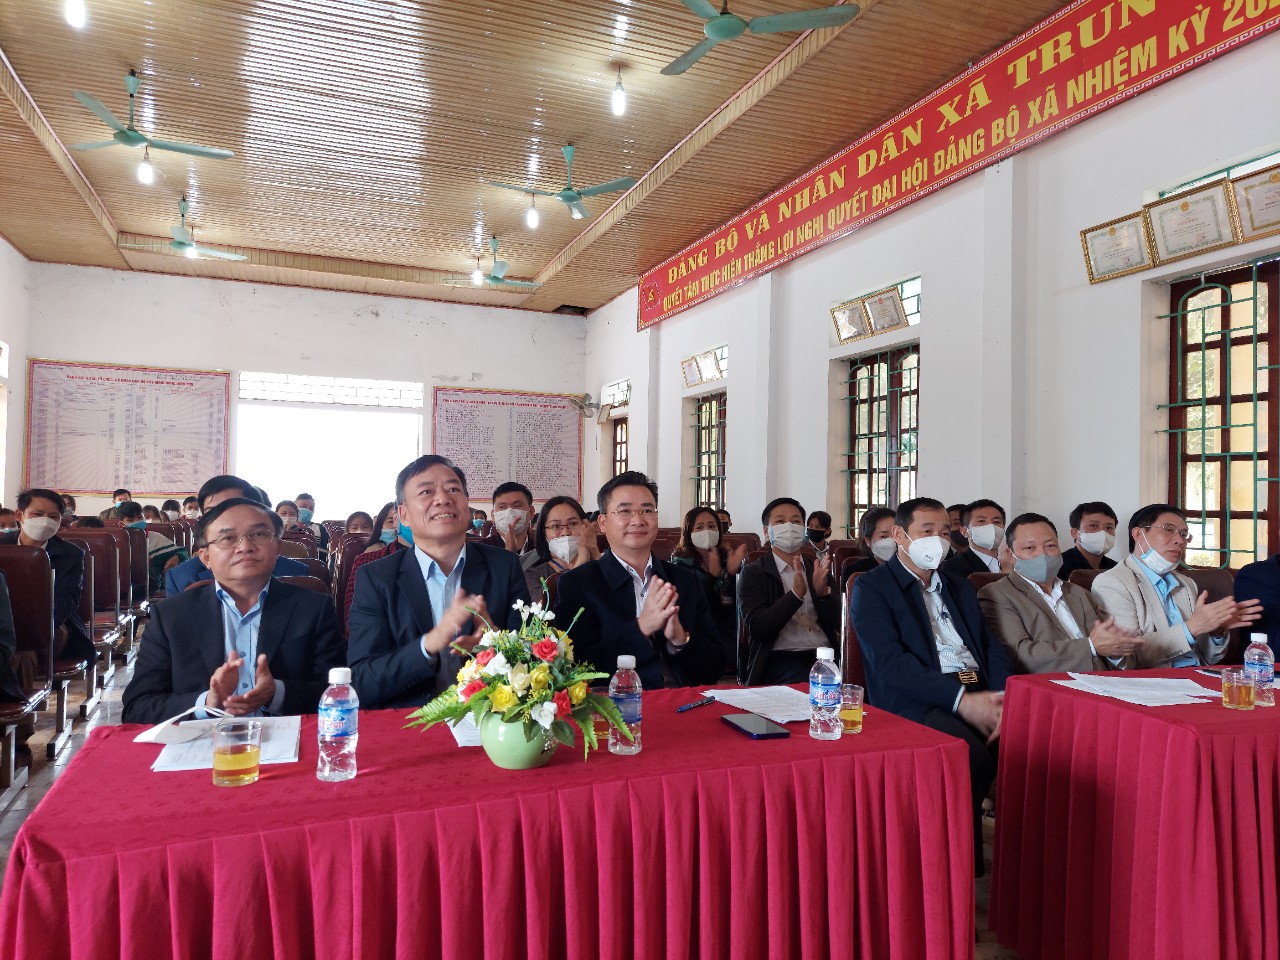 Công đoàn Kiểm toán nhà nước và Công đoàn Kiểm toán nhà nước chuyên ngành III tổ chức thăm và trao quà cho các học sinh nghèo vượt khó tại tỉnh Nghệ An